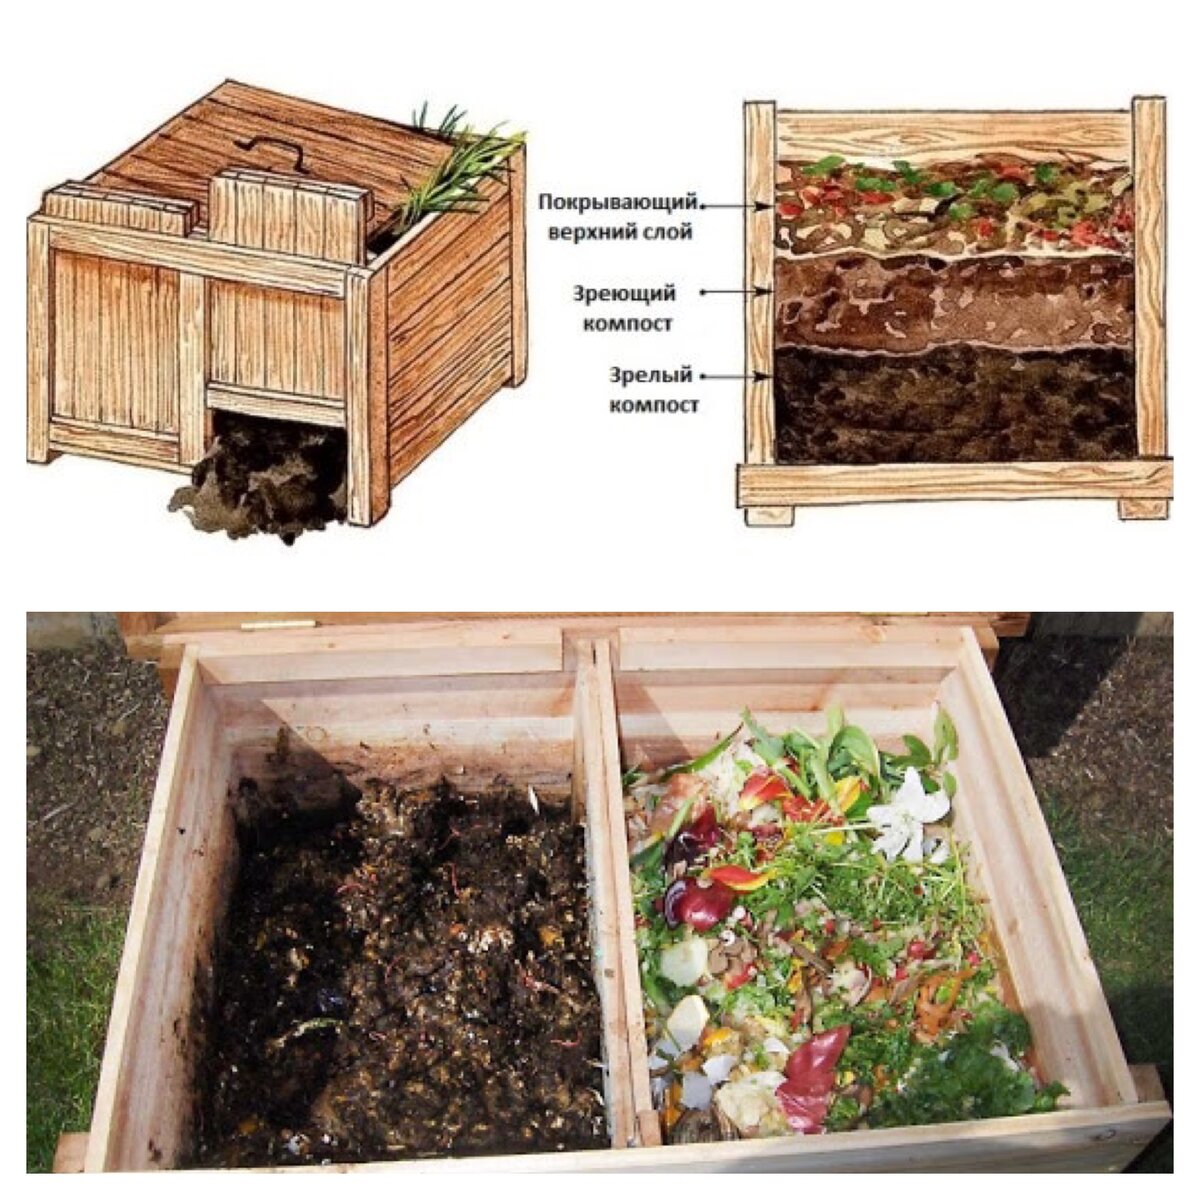 Чтобы получить качественное органическое удобрение для подкормки садовых и огородных культур, важно знать, что можно и нельзя закладывать в компостную яму